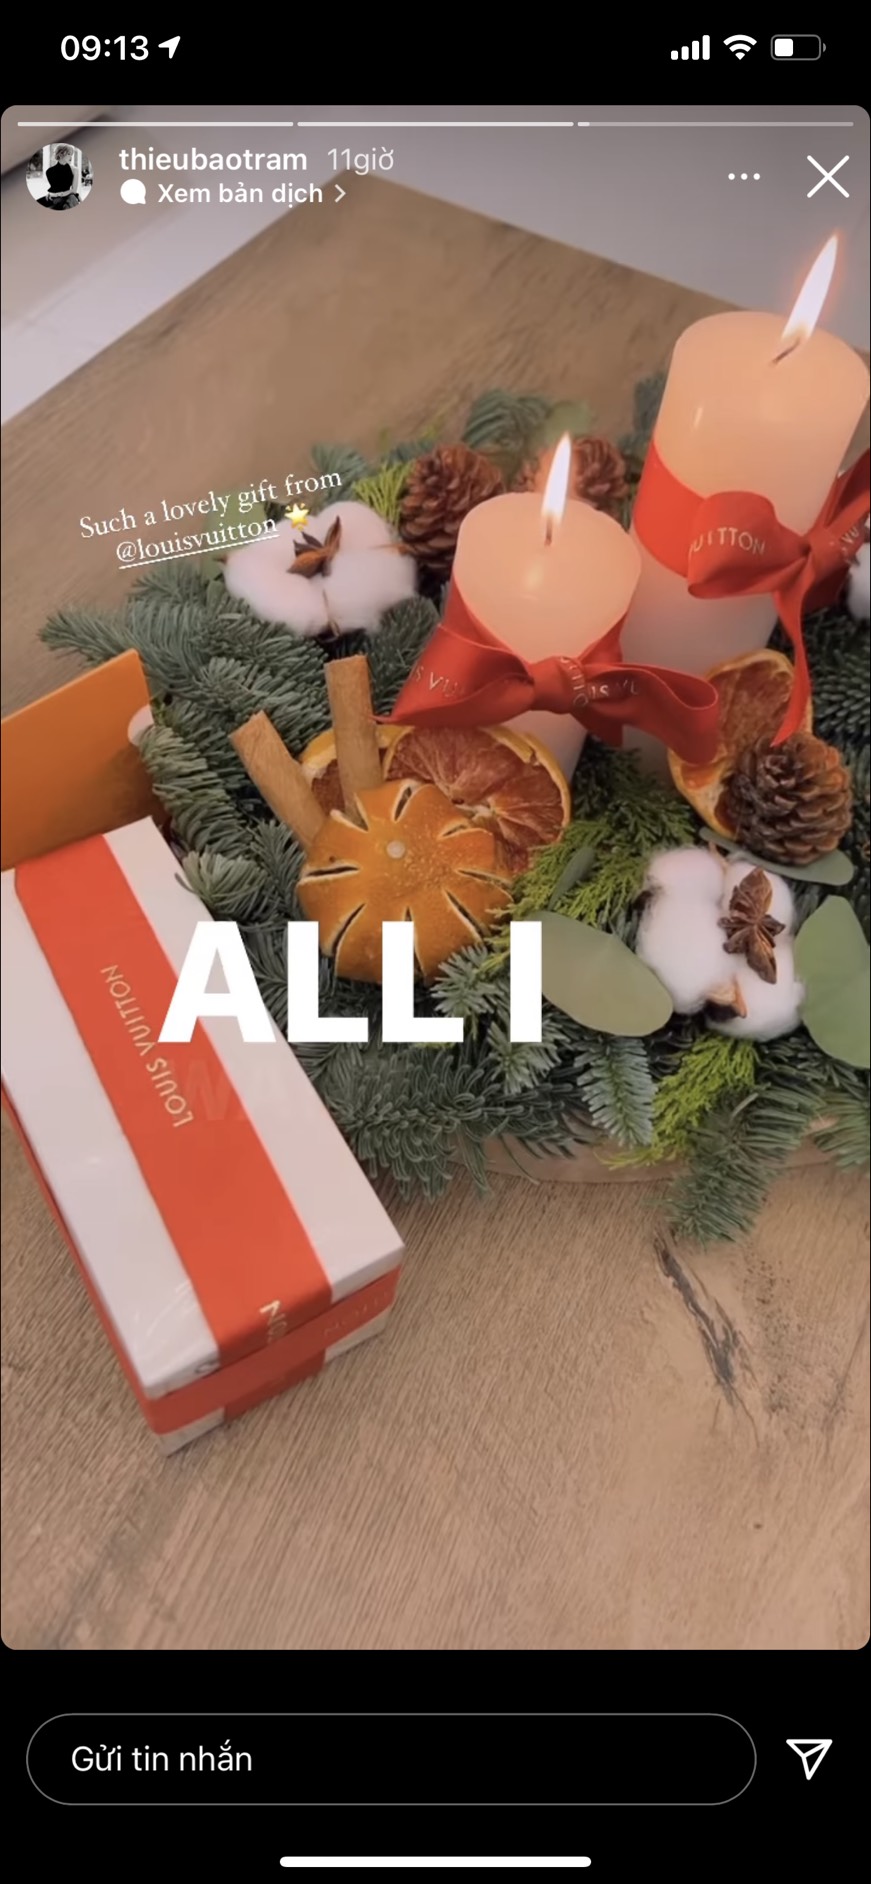 Hình ảnh Thiều Bảo Trâm được nhận món quà từ thương hiệu xa xỉ Louis Vuitton nhân dịp Giáng sinh khiến dân tình chú ý